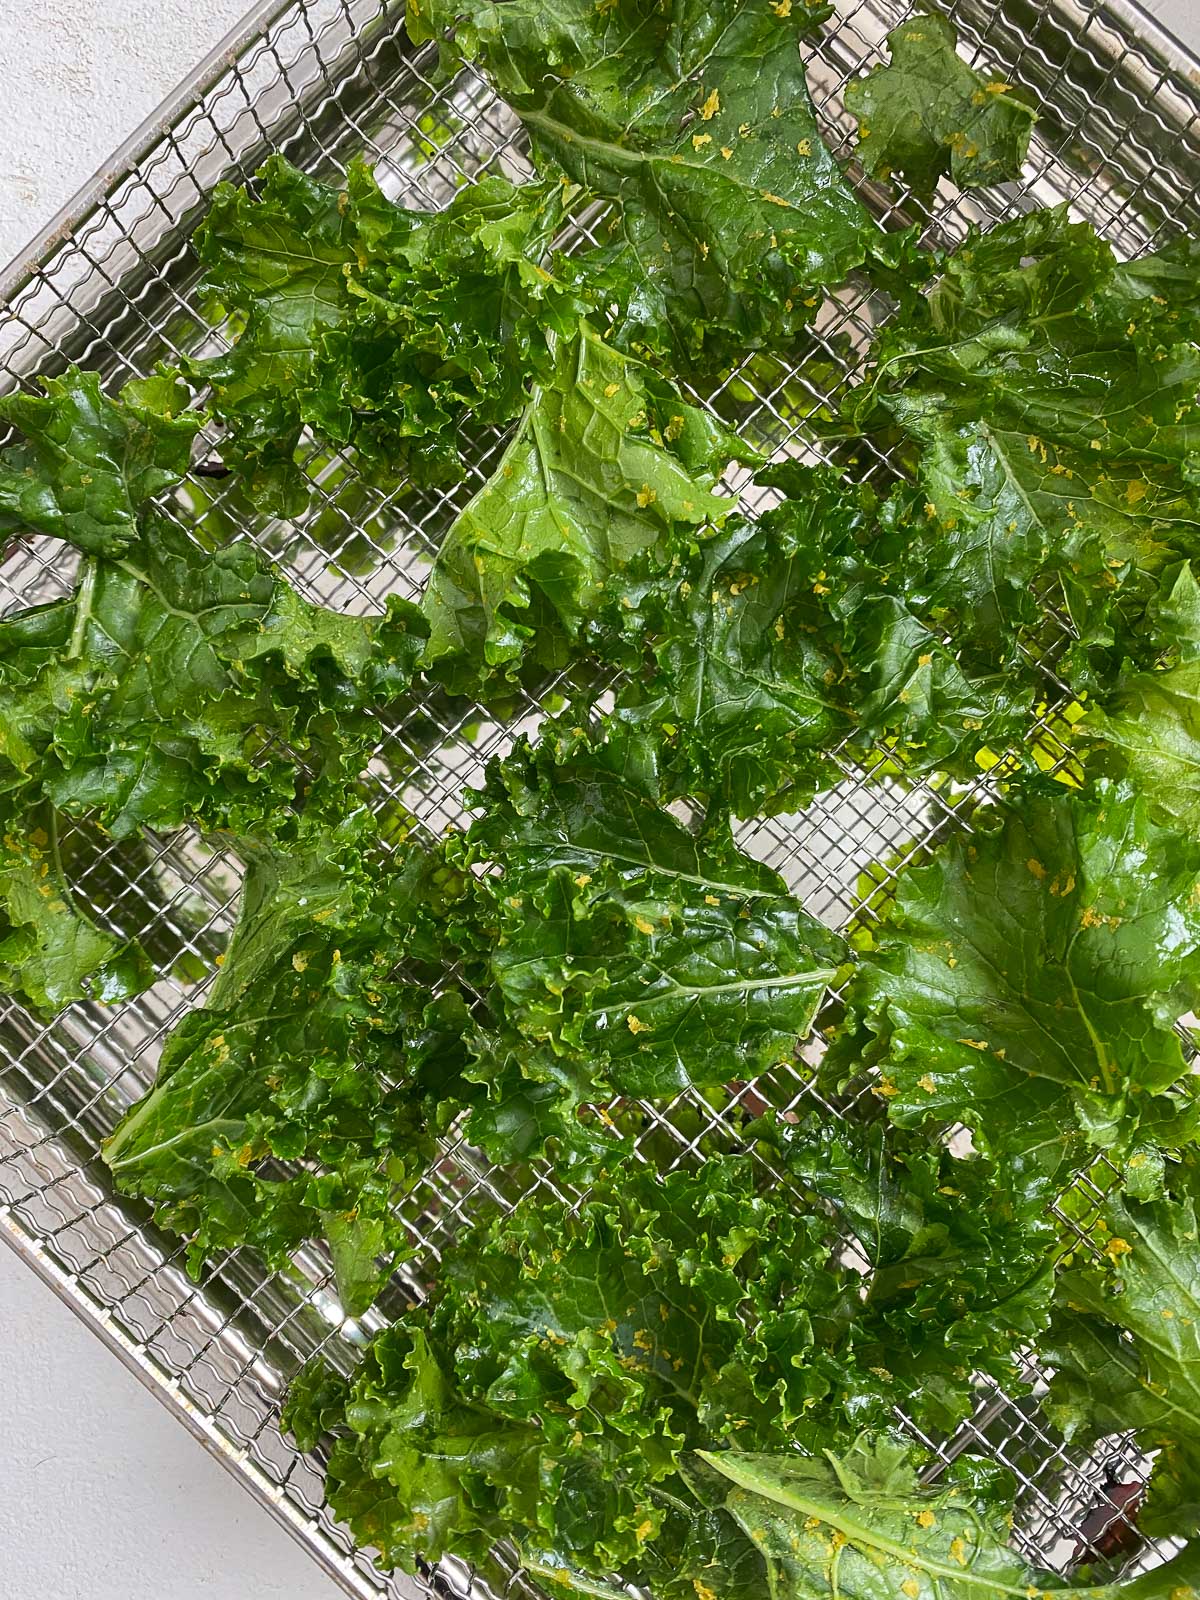 post addition of seasonings onto kale on rack